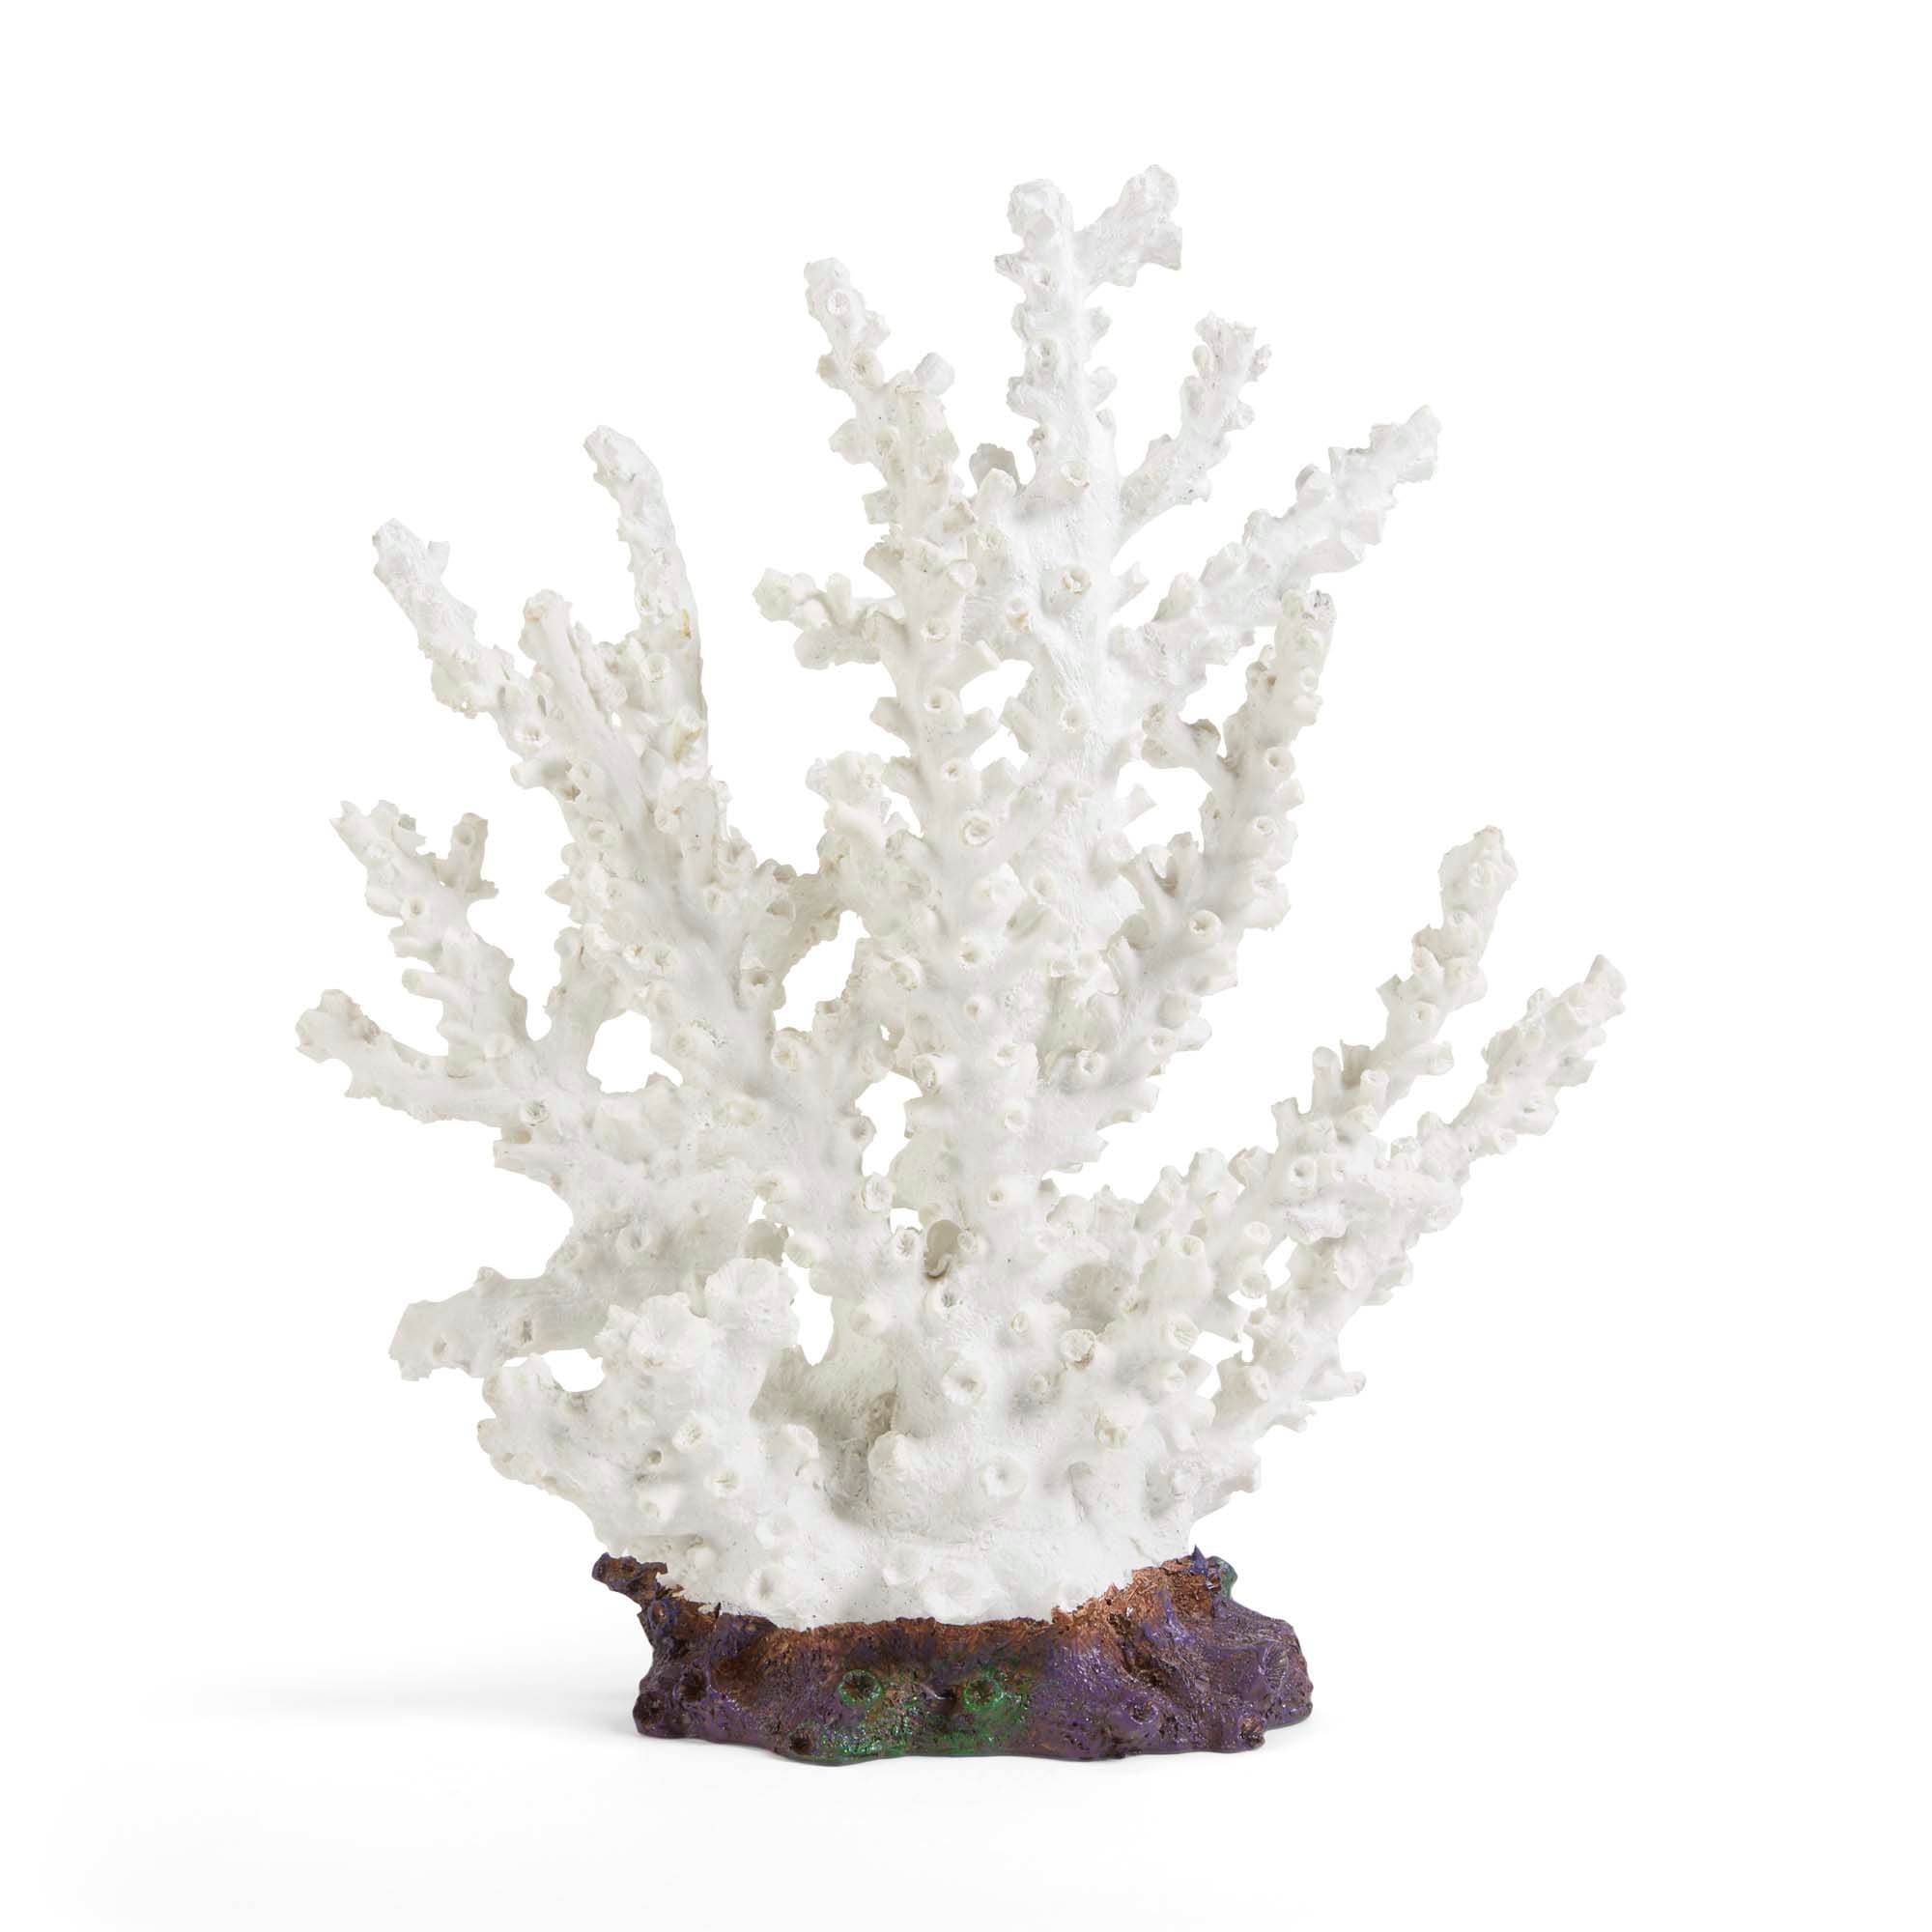 Imagitarium White Coral Aquarium Decor